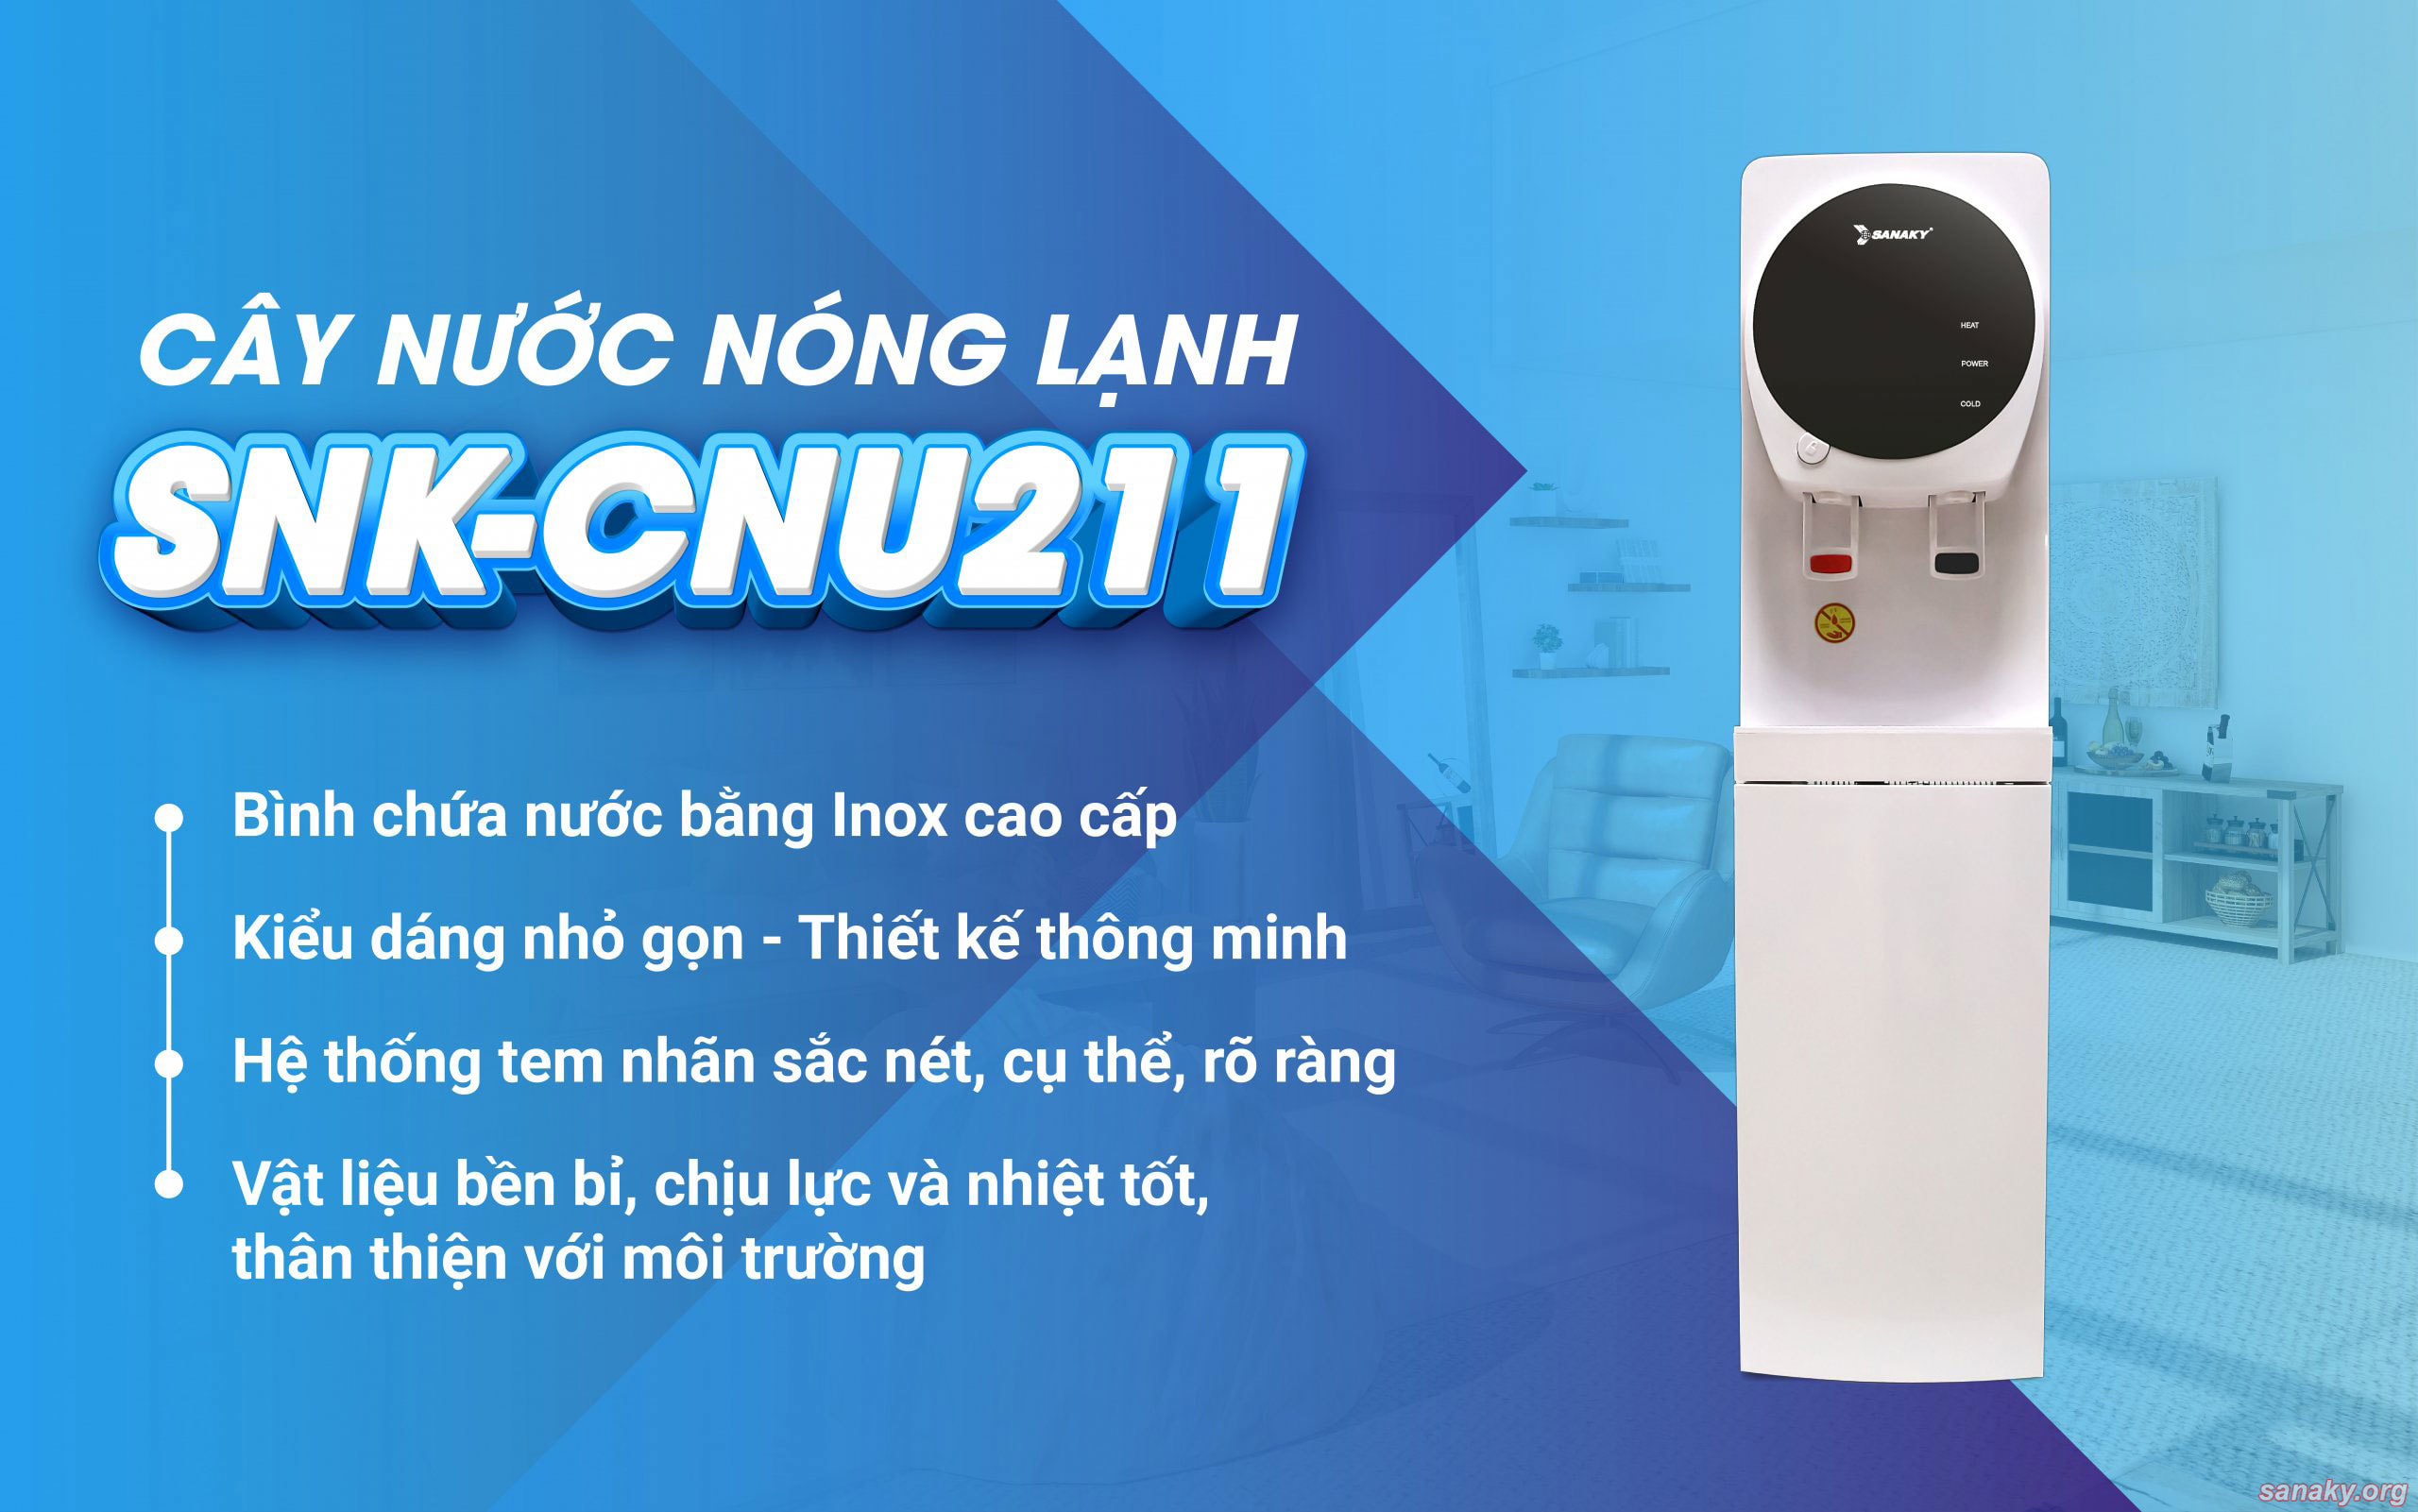 Lý do bạn nên chọn cây nước nóng lạnh SNK-CNU211 cho phòng khách